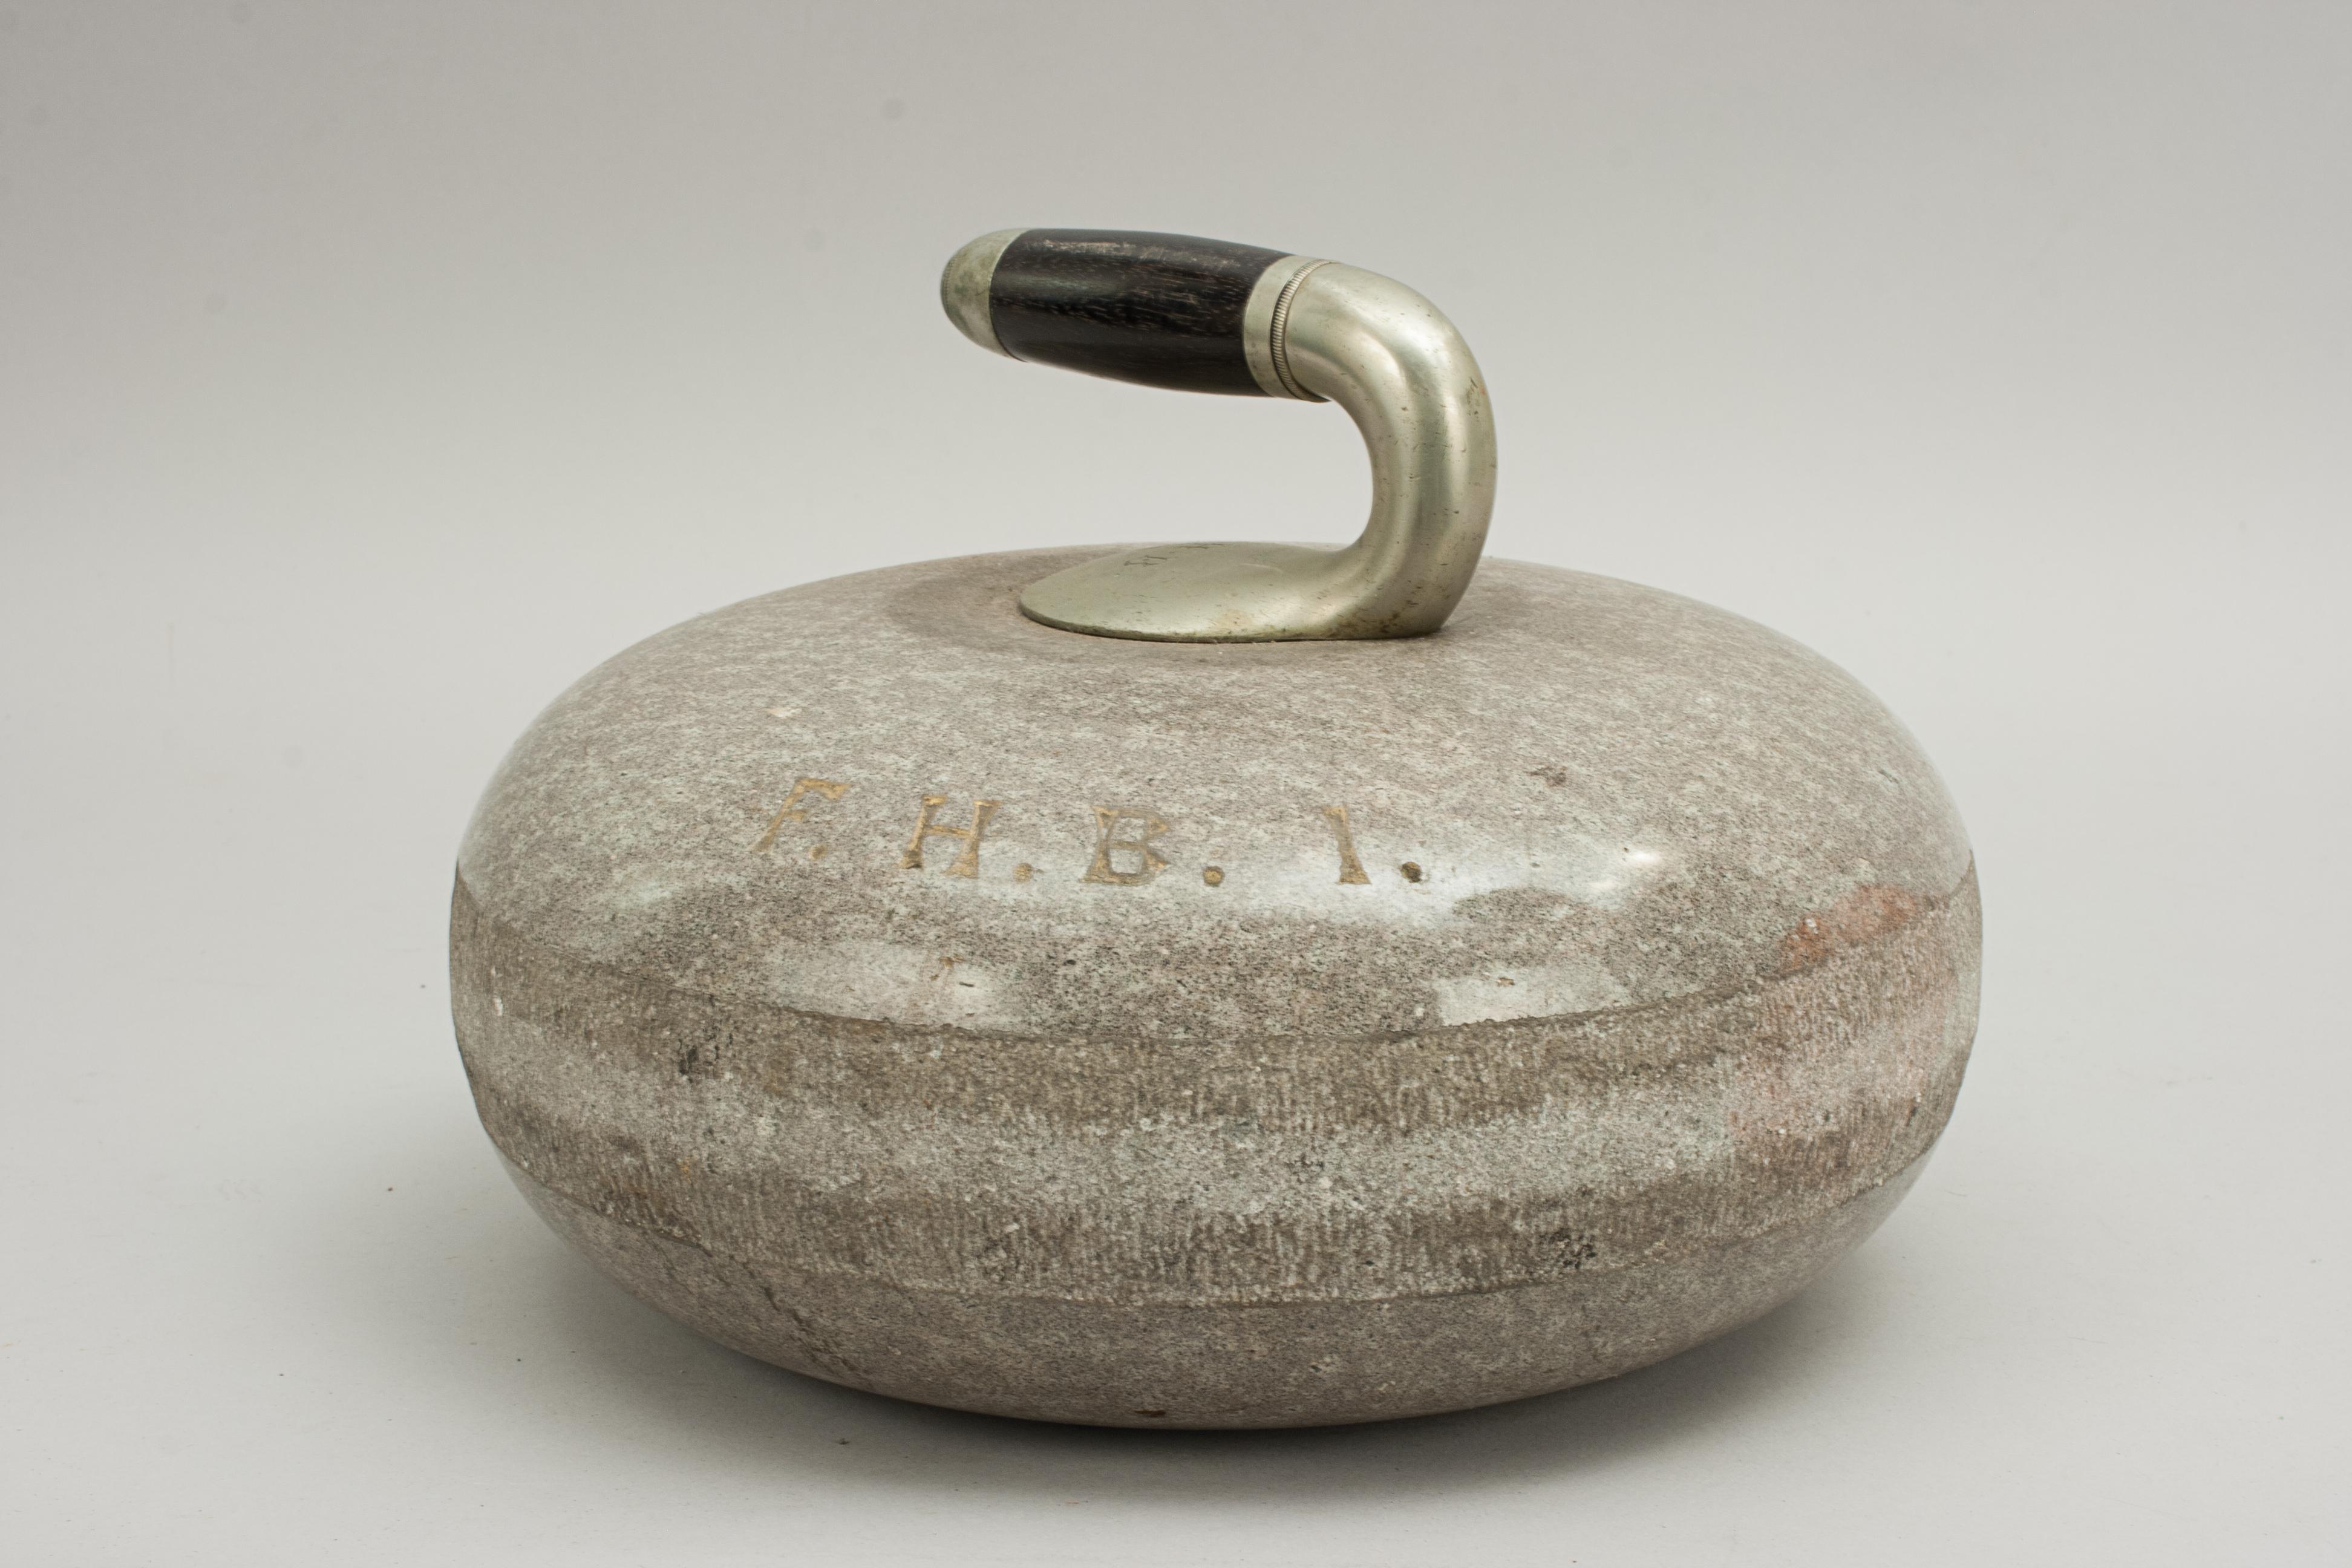 Antique Curling Stone in Wicker Basket 1